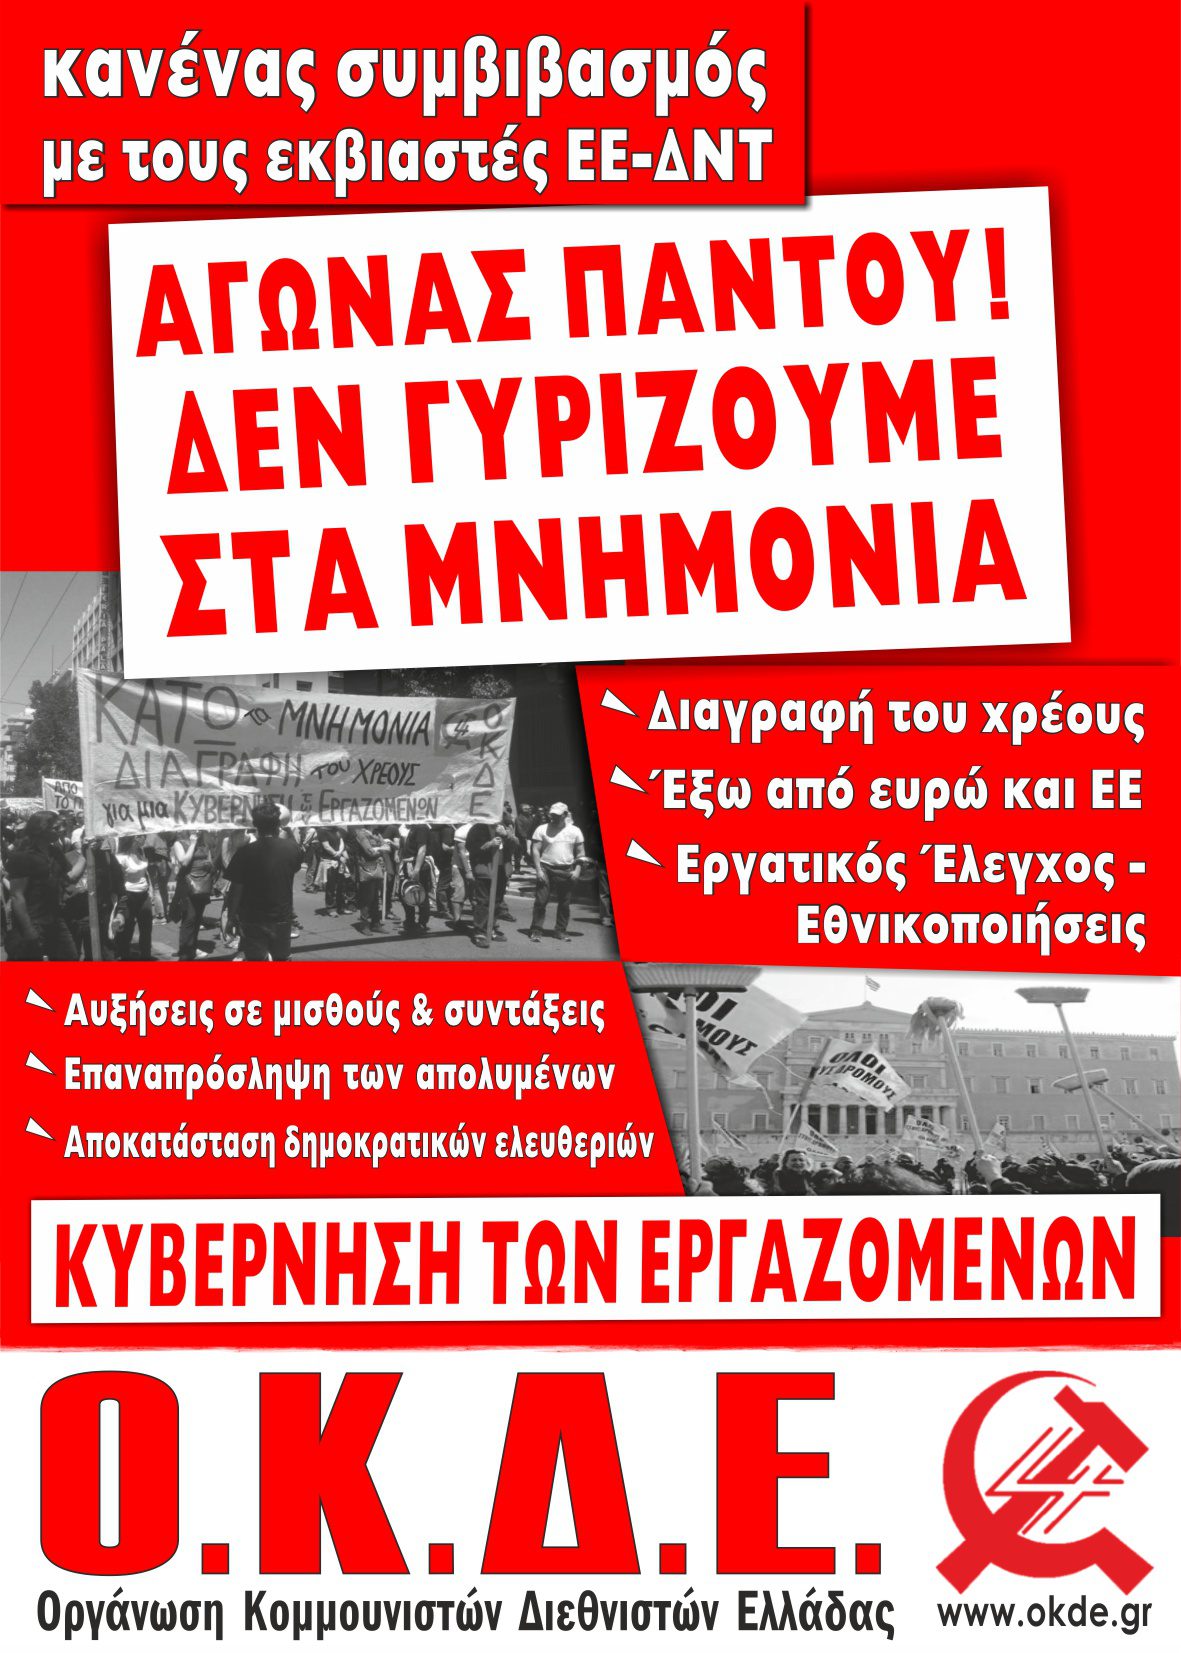 Ανοιχτές συγκεντρώσεις – εκδηλώσεις της ΟΚΔΕ σε γειτονιές της Θεσσαλονίκης. ΟΧΙ στη νέα συμφωνία. Ρήξη τώρα με ΕΕ-ΔΝΤ!